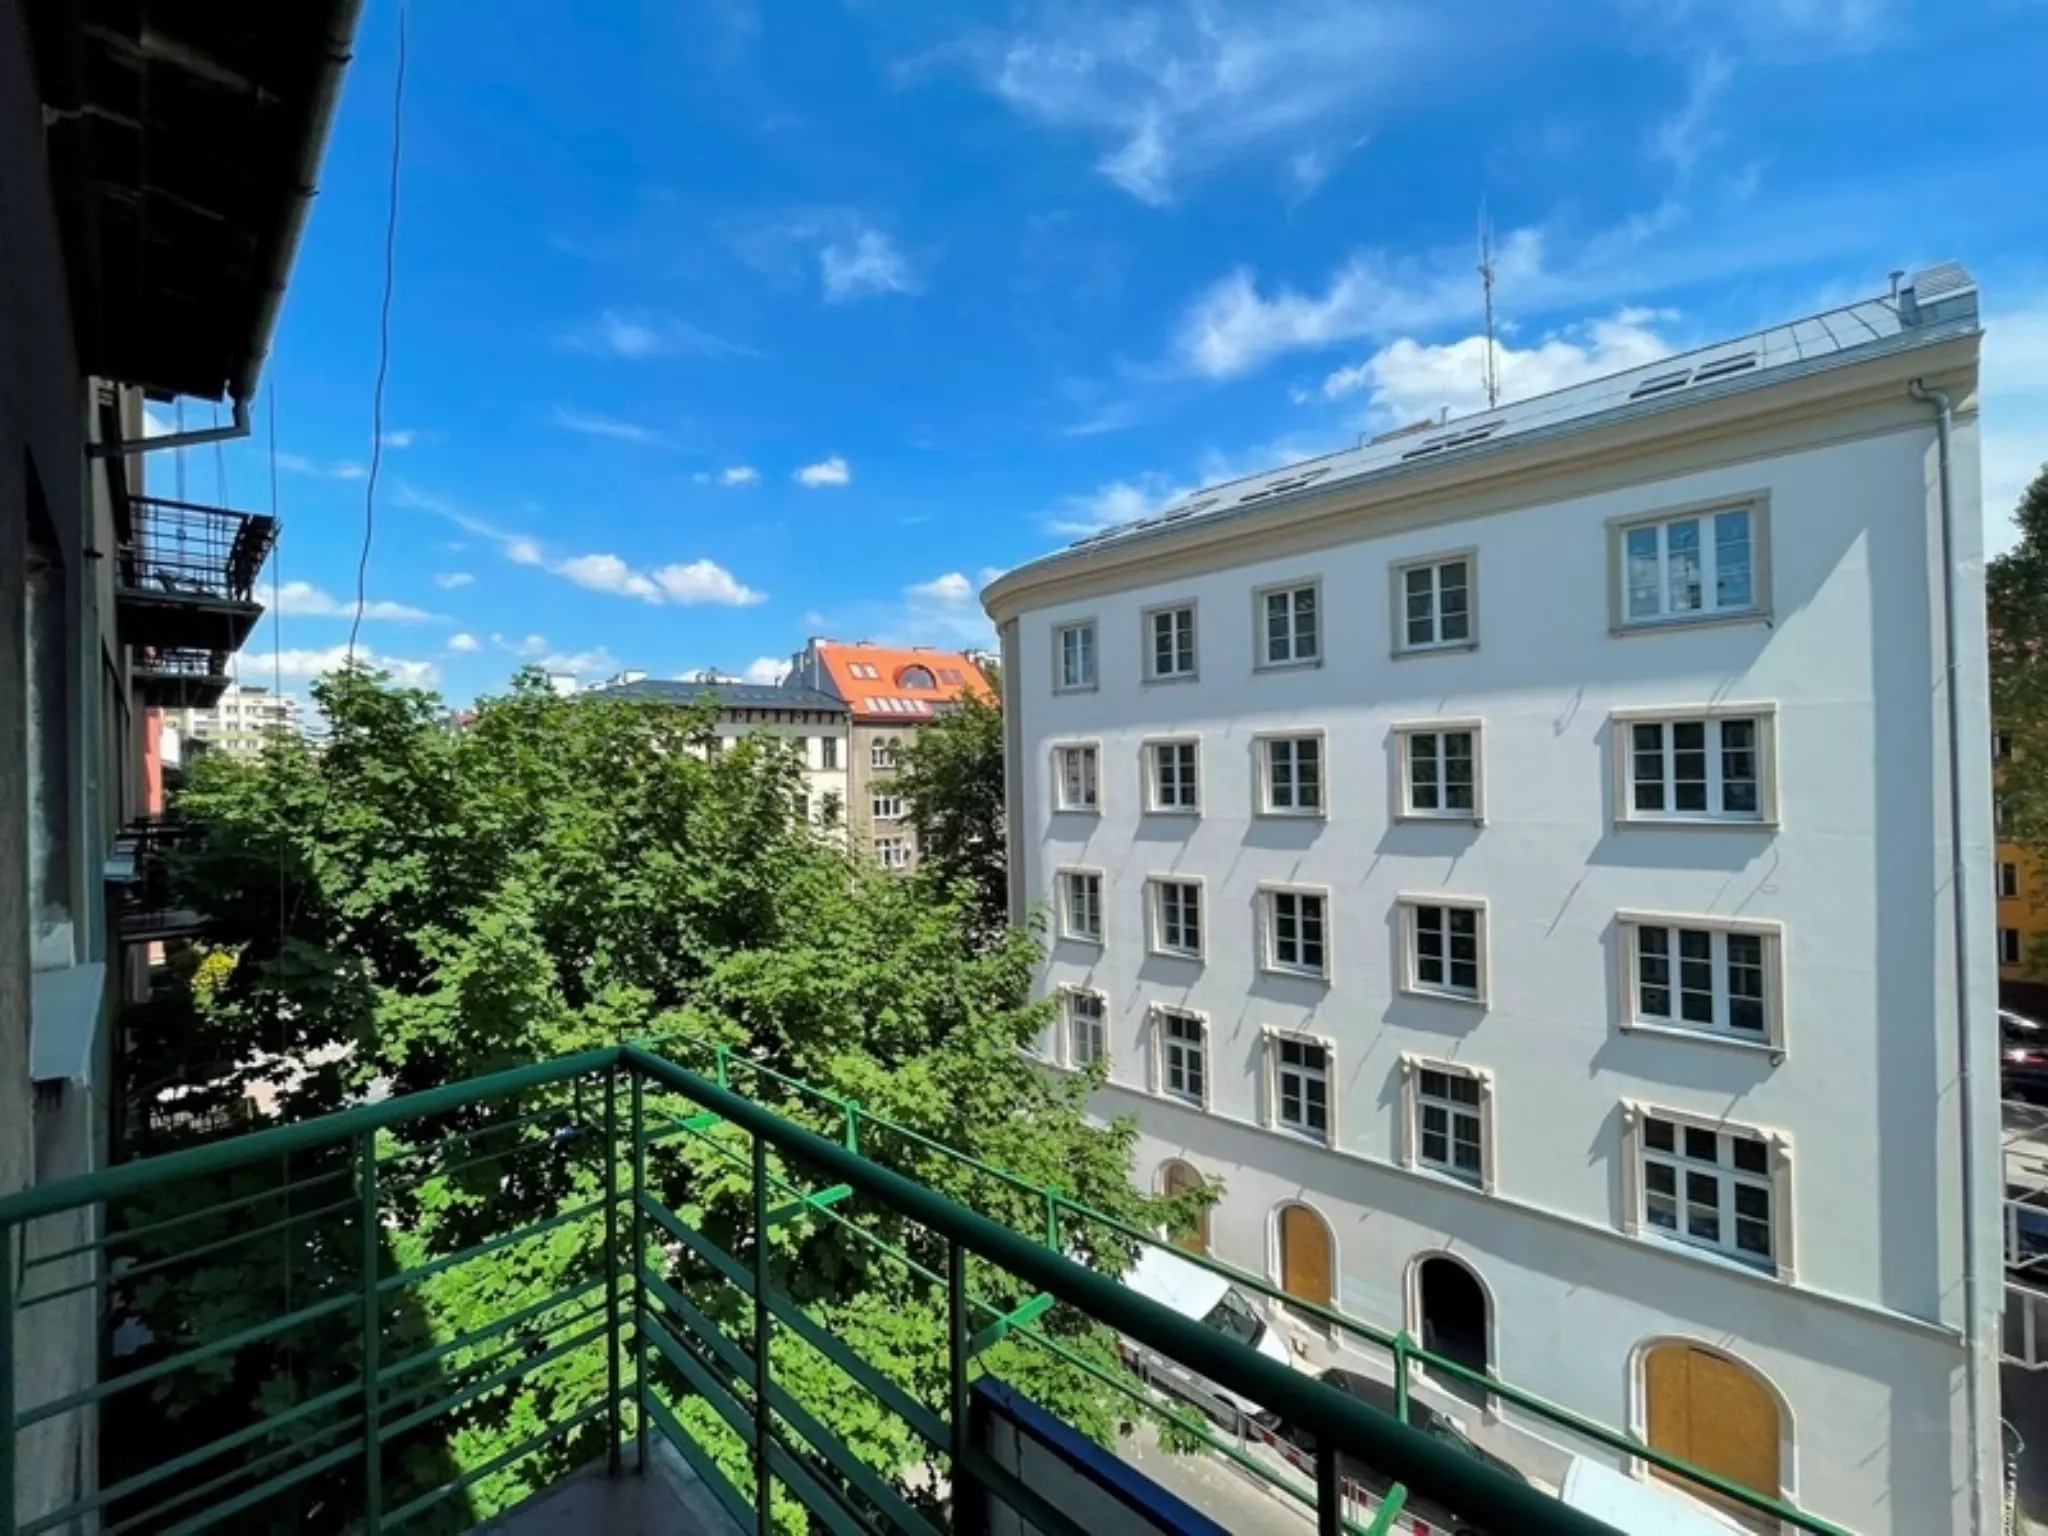 Józefitów, 78m2, 2 pok+ kuchnia, 2 balkony, winda. - Mieszkanie na sprzedaż Kraków